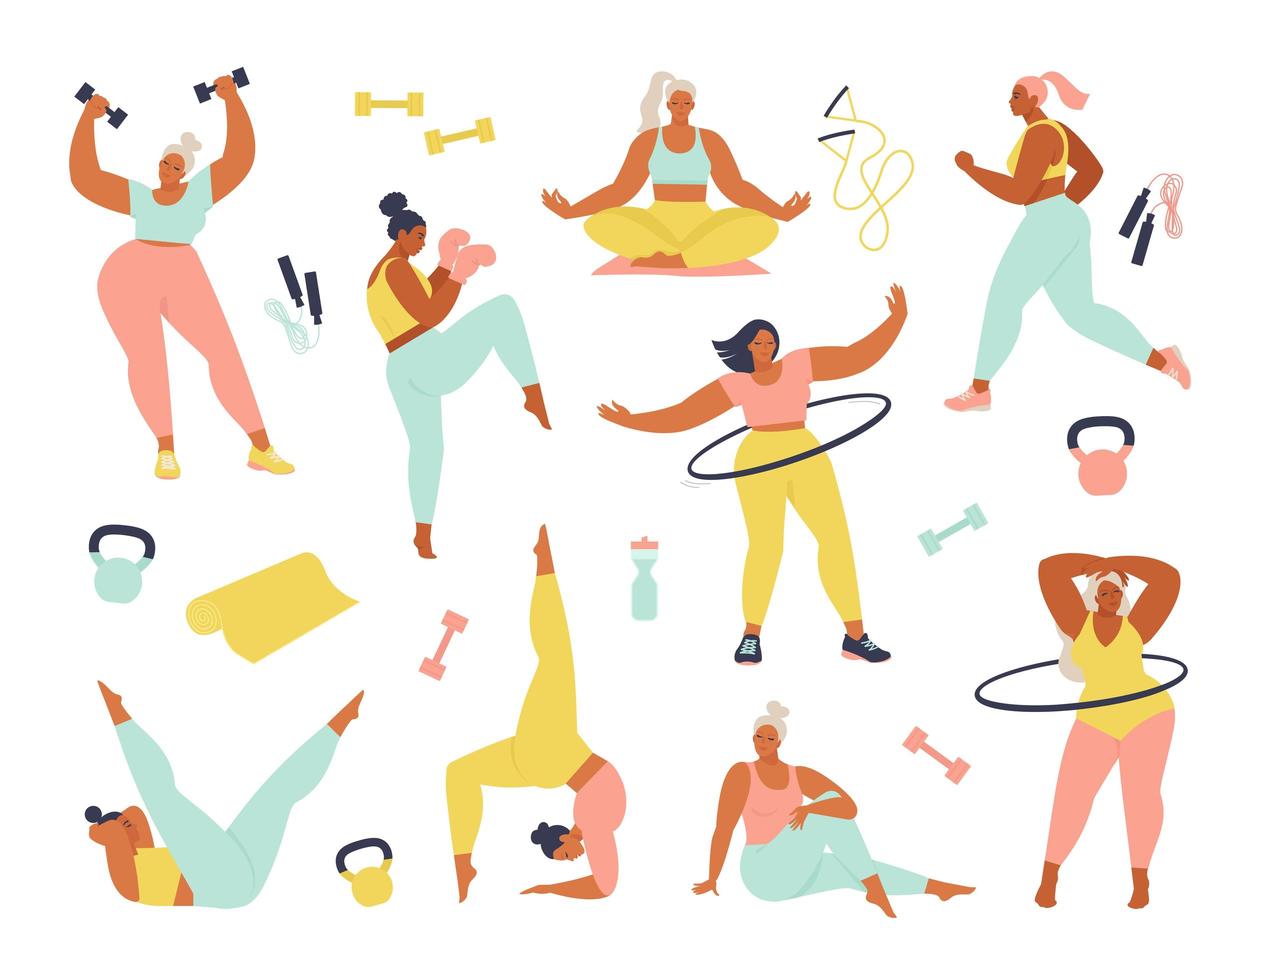 donne di diverse dimensioni, età e attività razziali. insieme di donne che fanno sport, yoga, jogging, salto, stretching, fitness. illustrazione piana di vettore delle donne di sport isolata su fondo bianco.